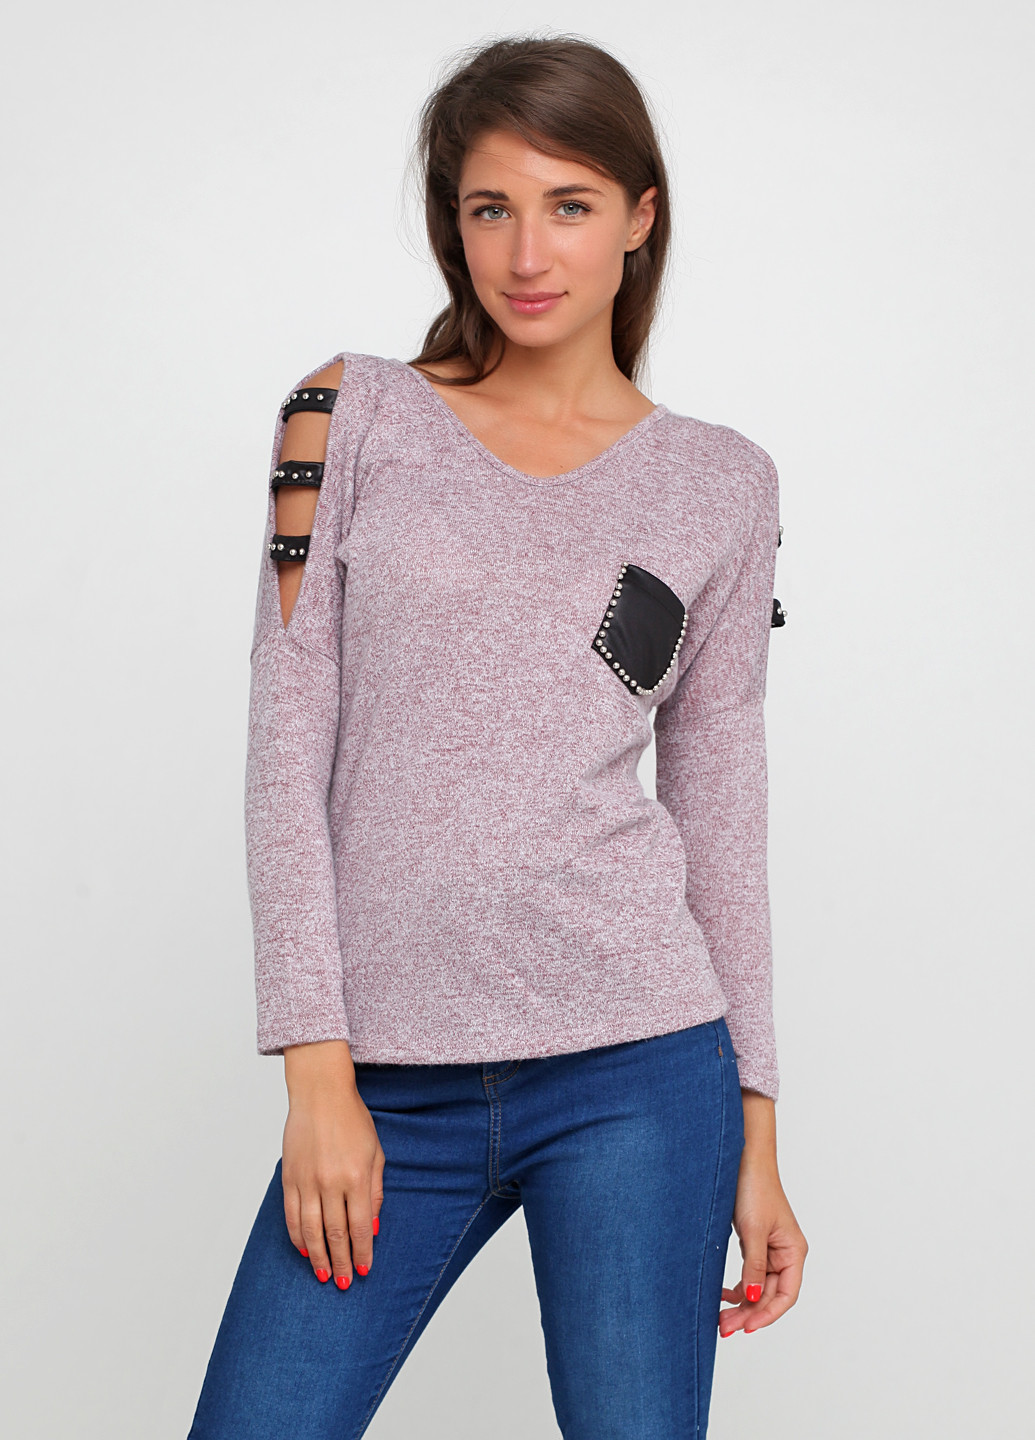 Бледно-розовый демисезонный пуловер пуловер Imperial